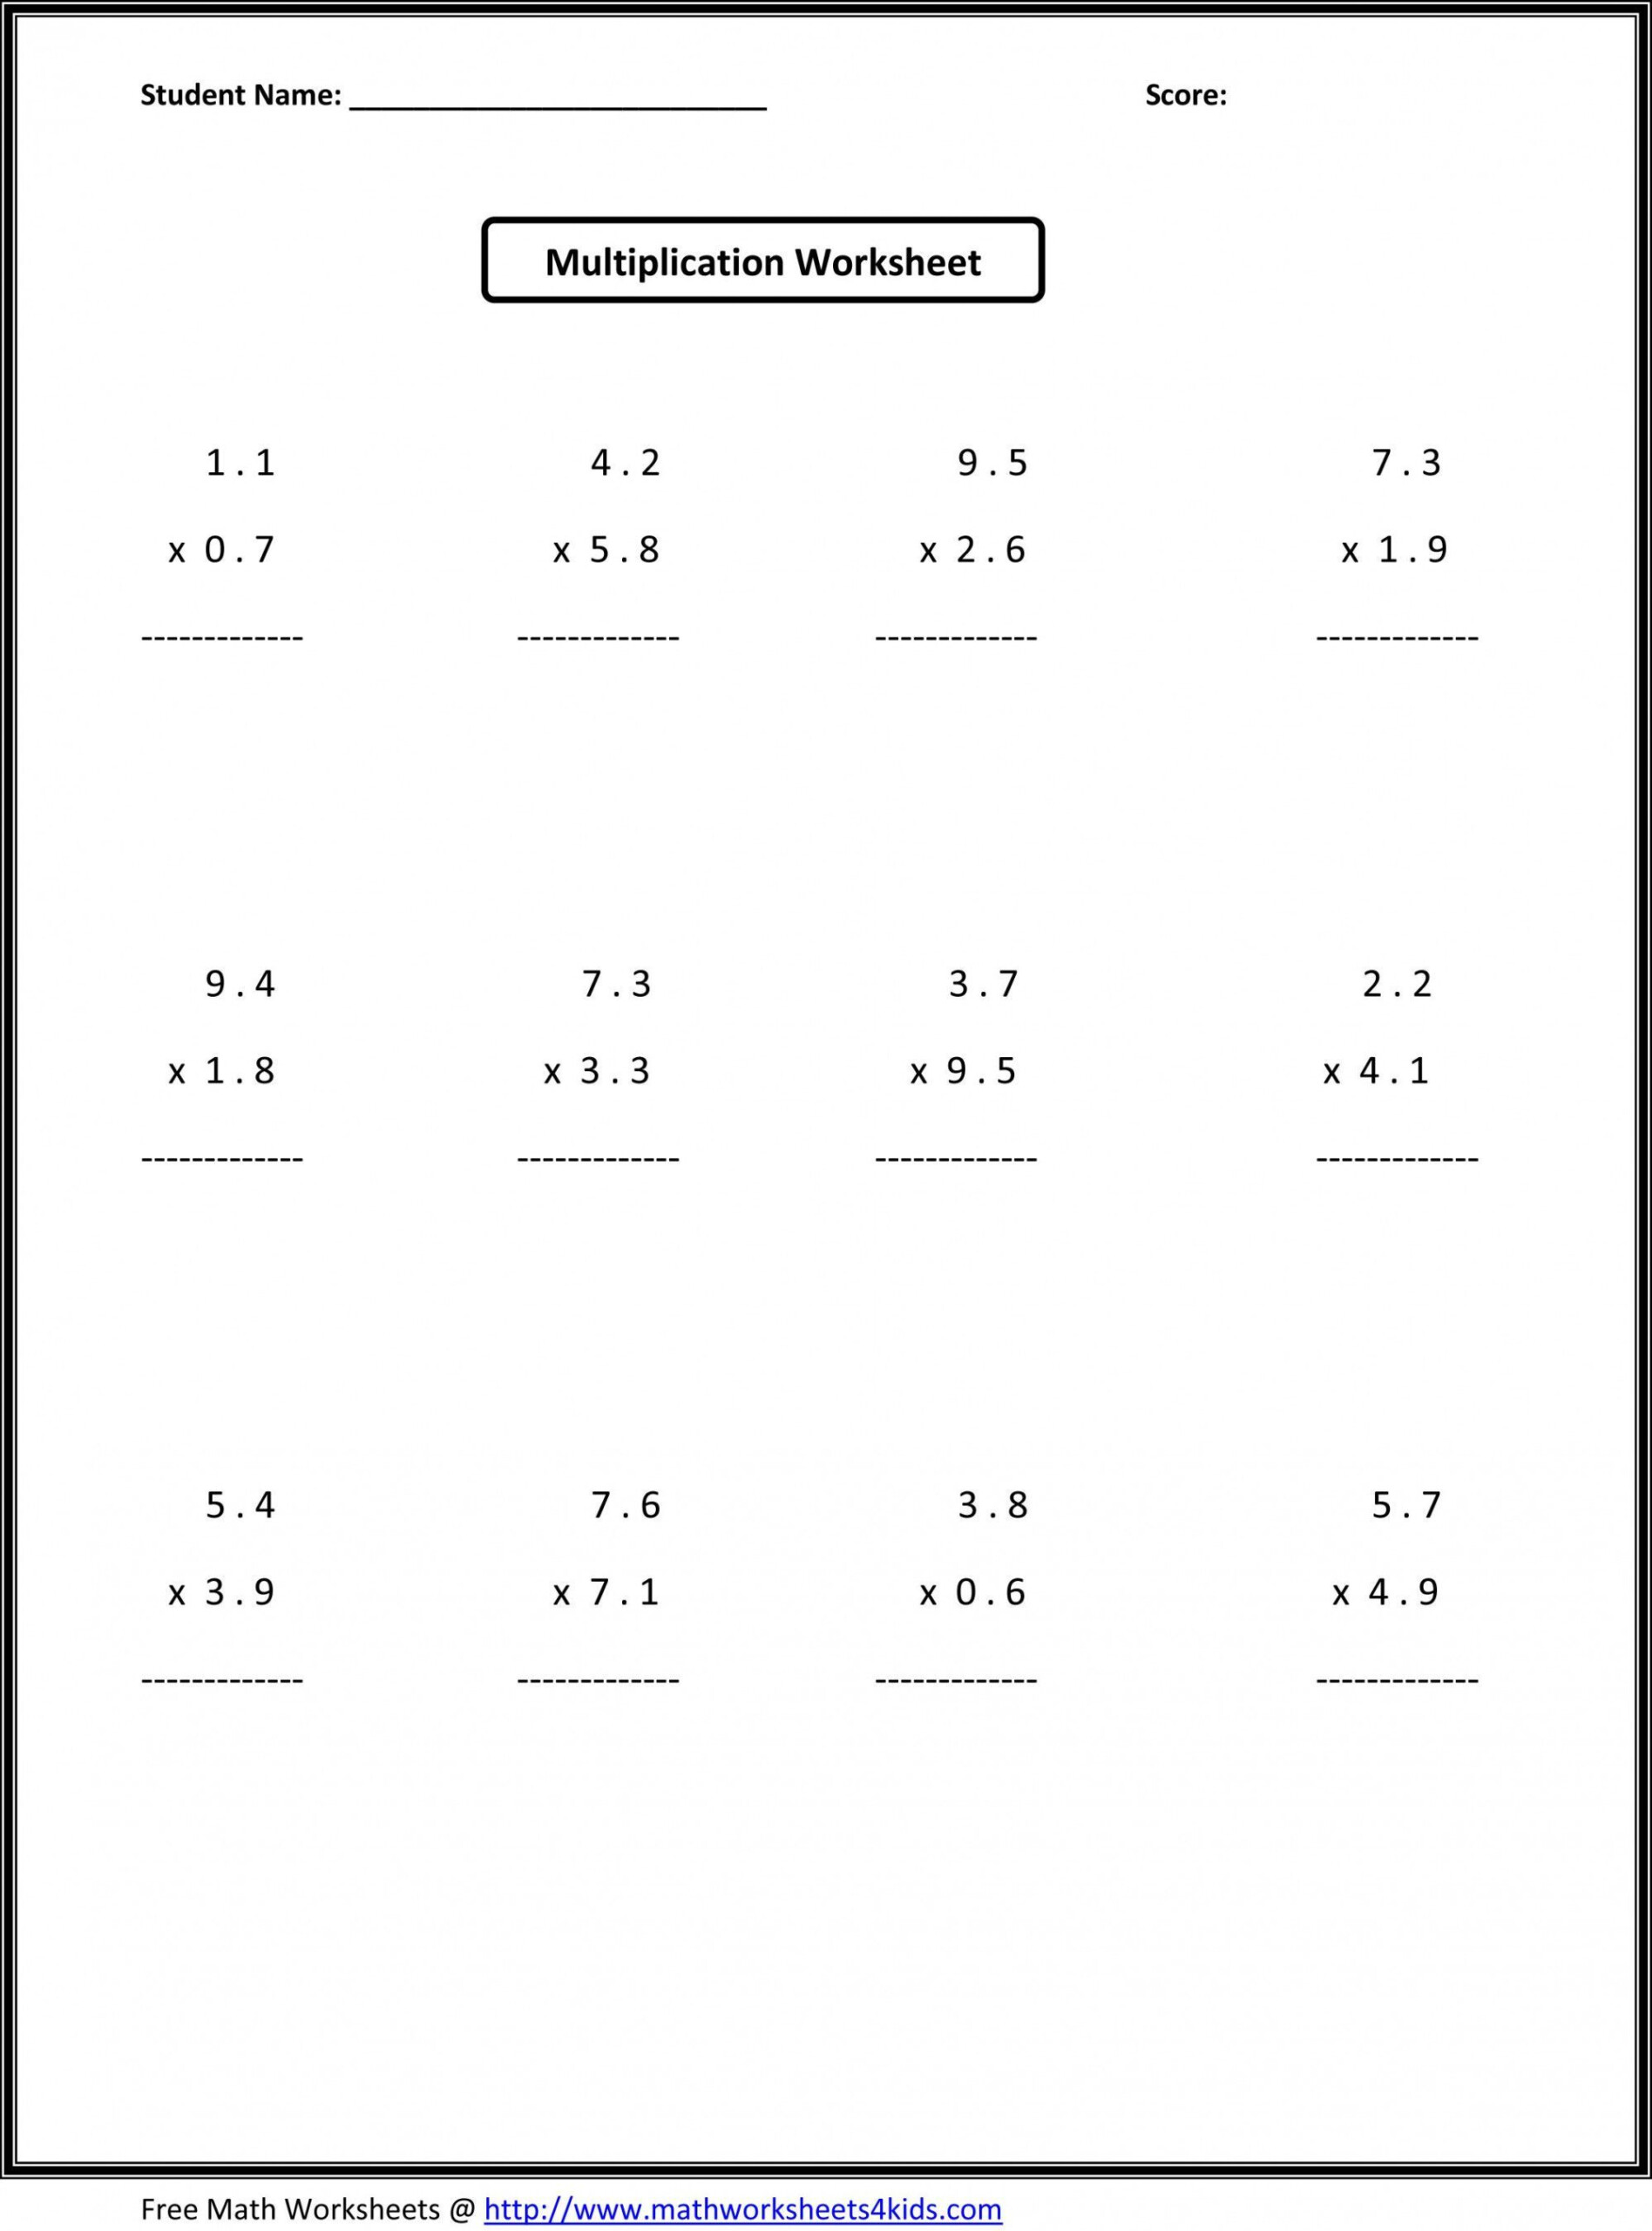 6Th Grade Multiplication Worksheets | 7Th Grade Math with regard to Multiplication Worksheets 7Th Grade